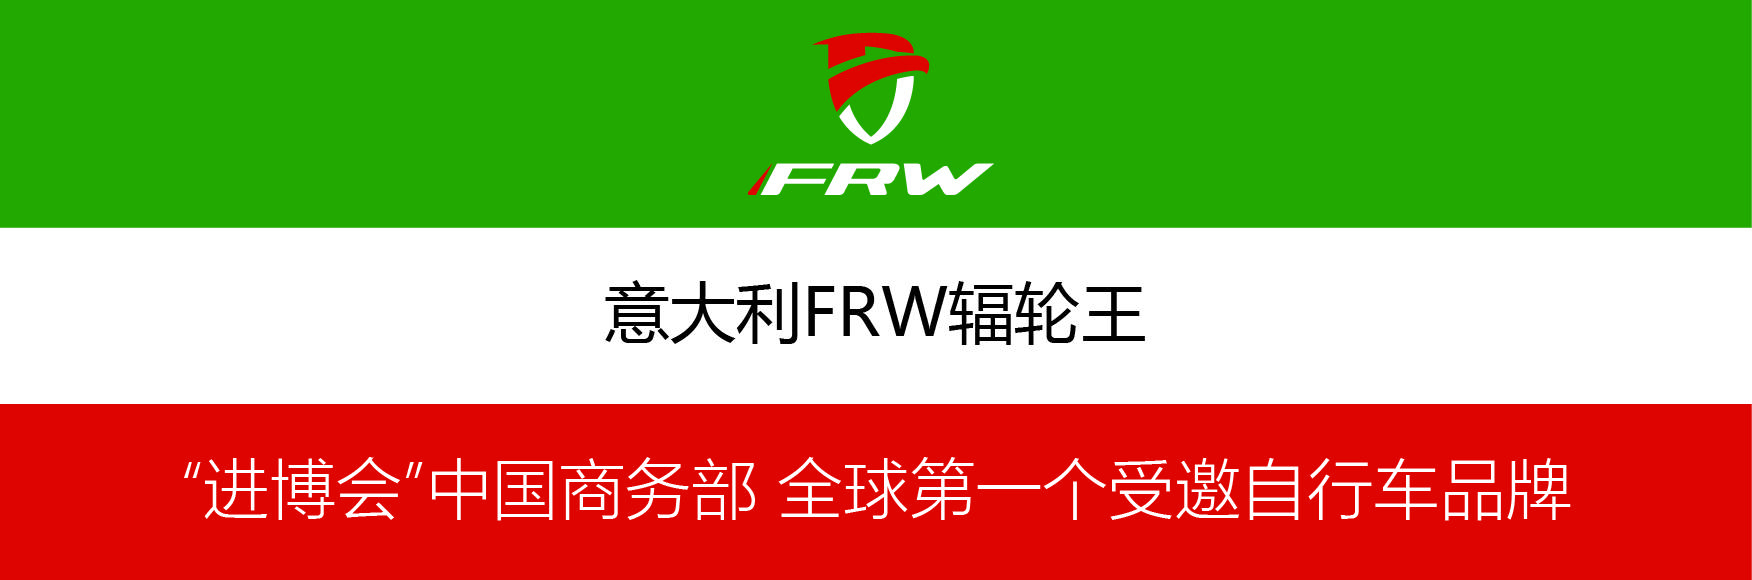 纳米体育全球10大最著名山地车第一品牌FRW辐轮王中国进博会精彩呈现(图3)